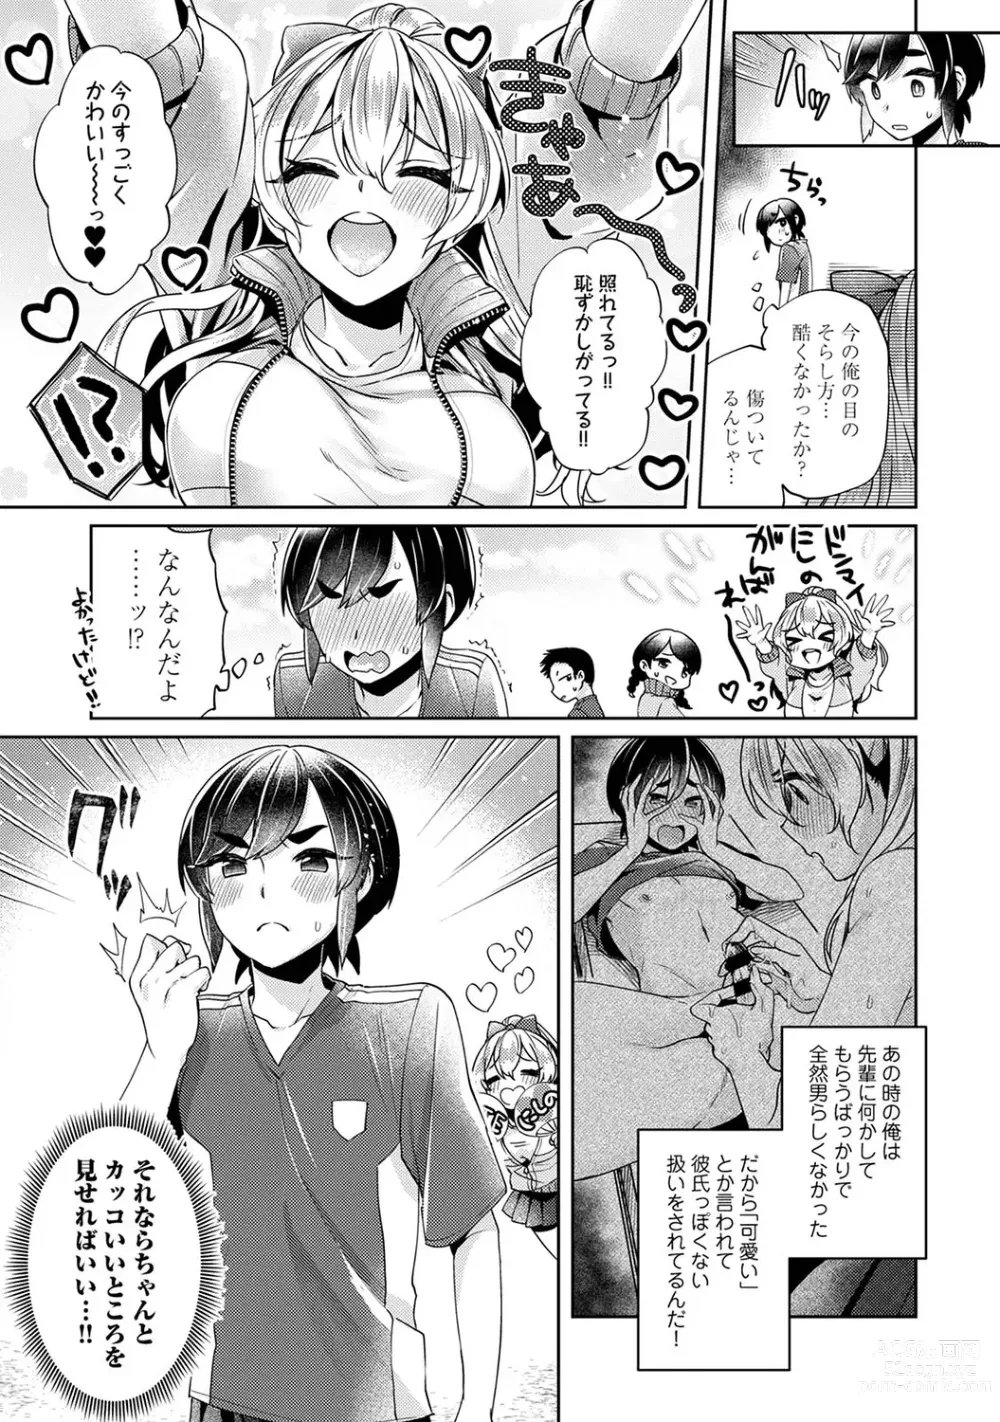 Page 29 of manga Suki Suki Diary